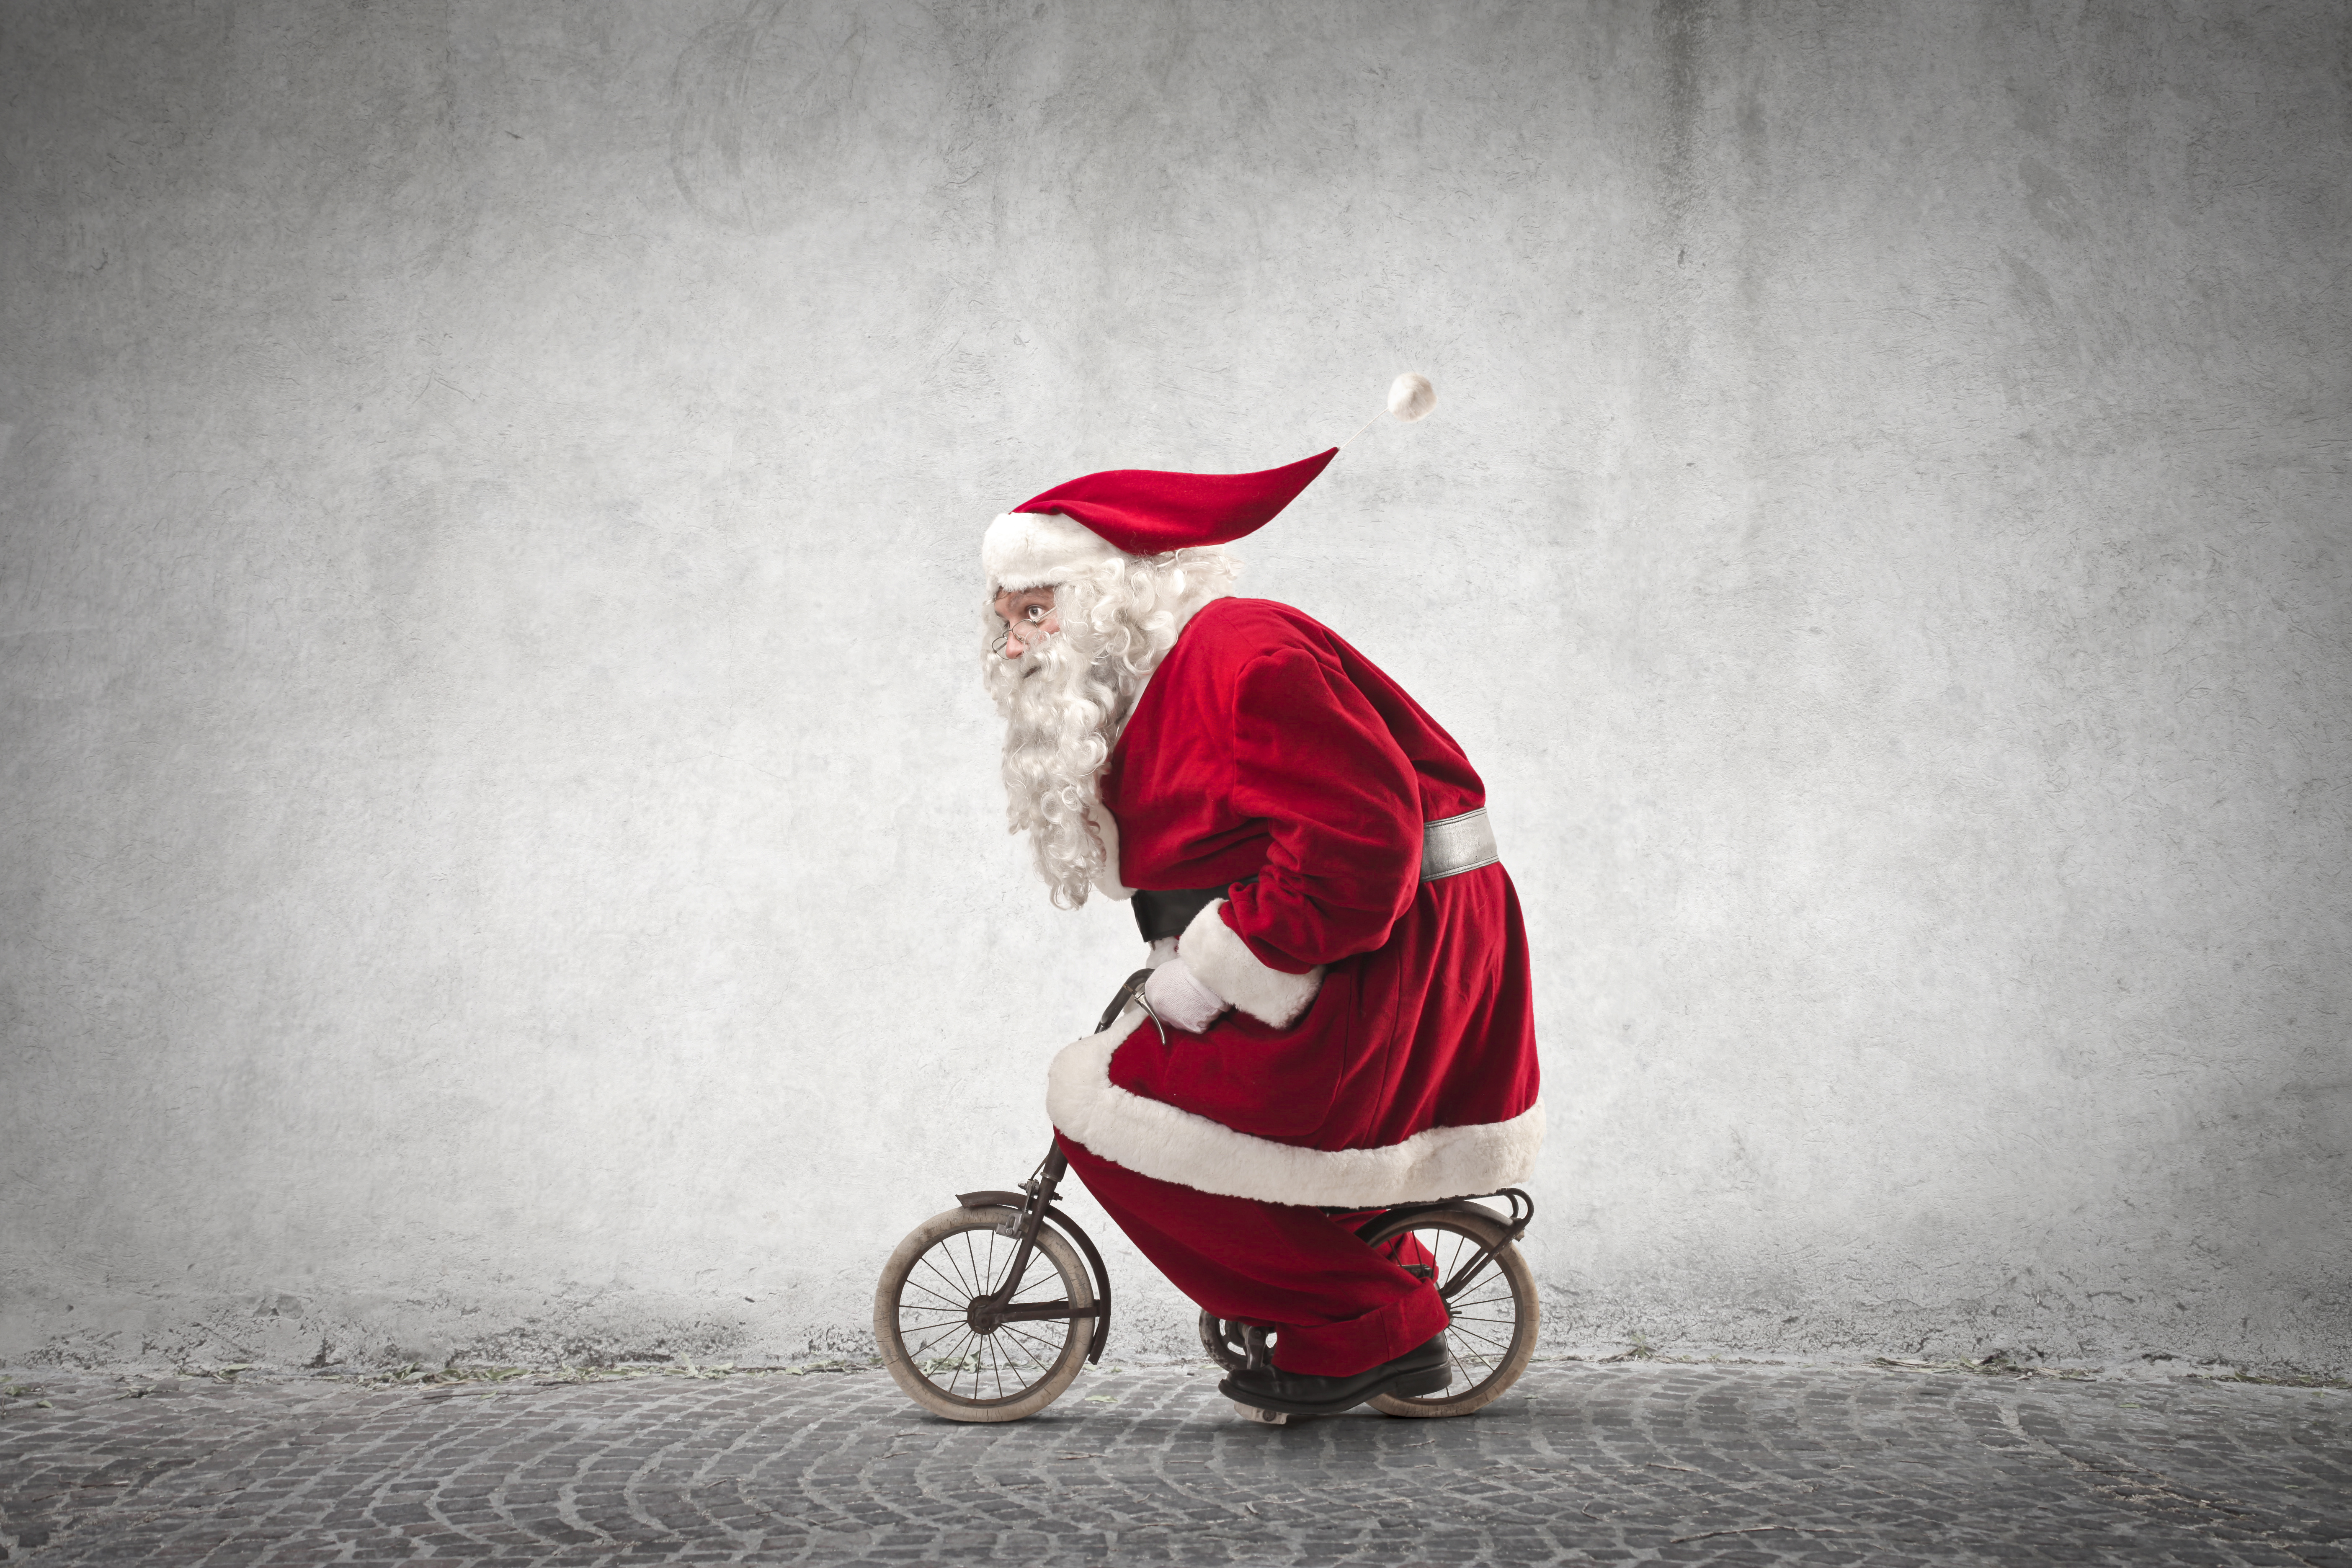 Скачать обои бесплатно Юмор, Рождество, Велосипед, Праздничные, Смешные, Санта картинка на рабочий стол ПК